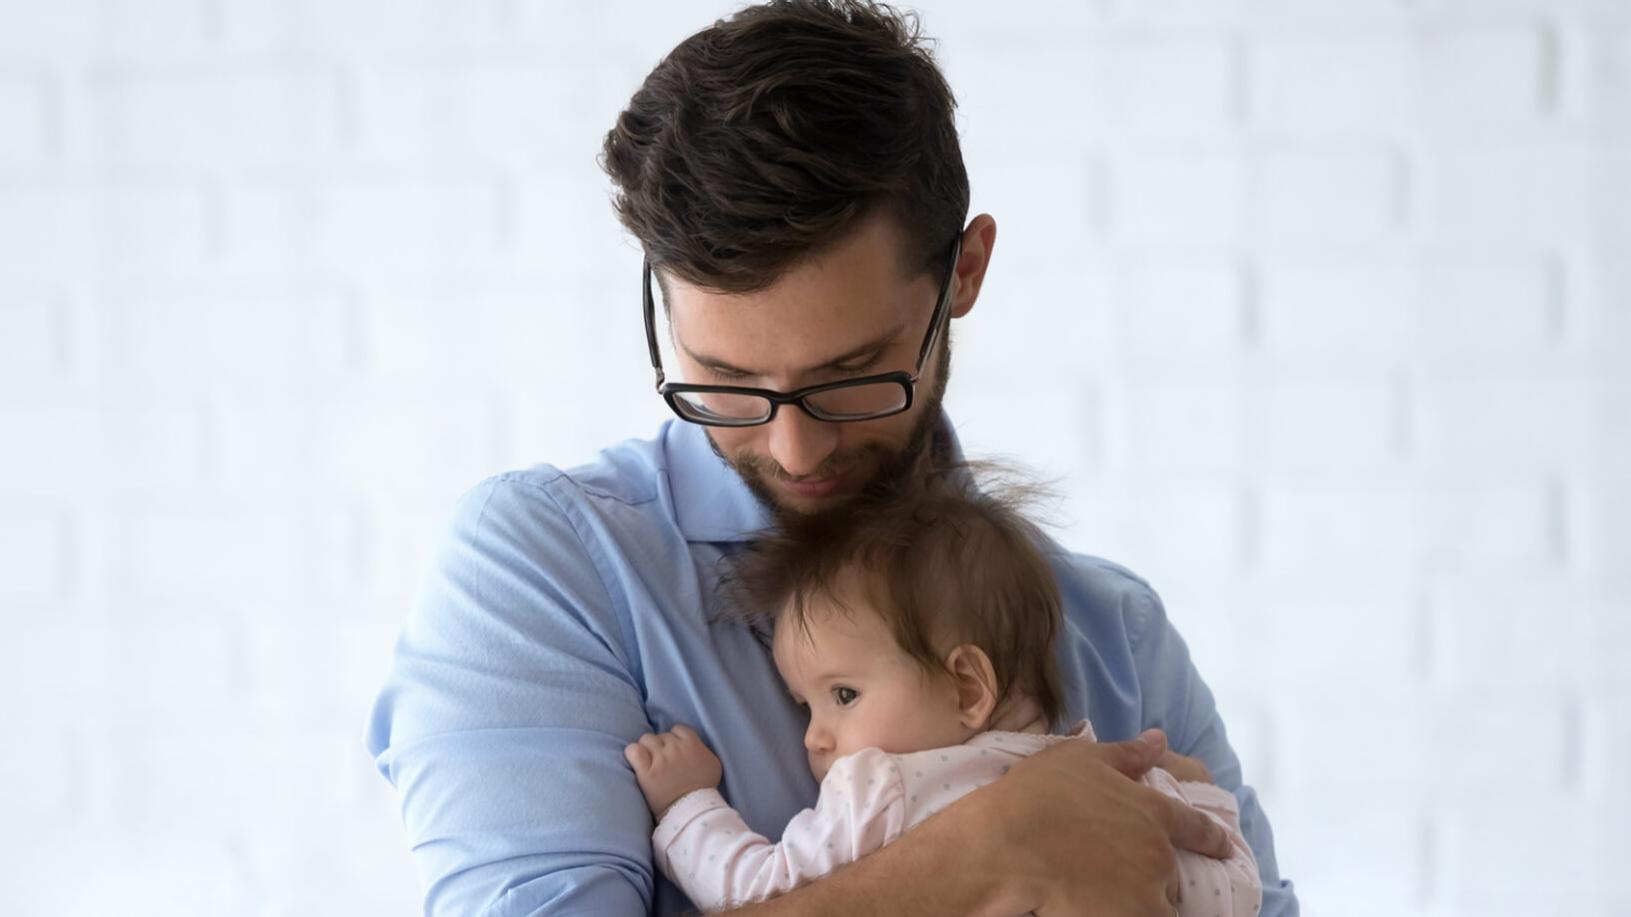 一名戴眼镜的近视男子抱着一个幼儿。